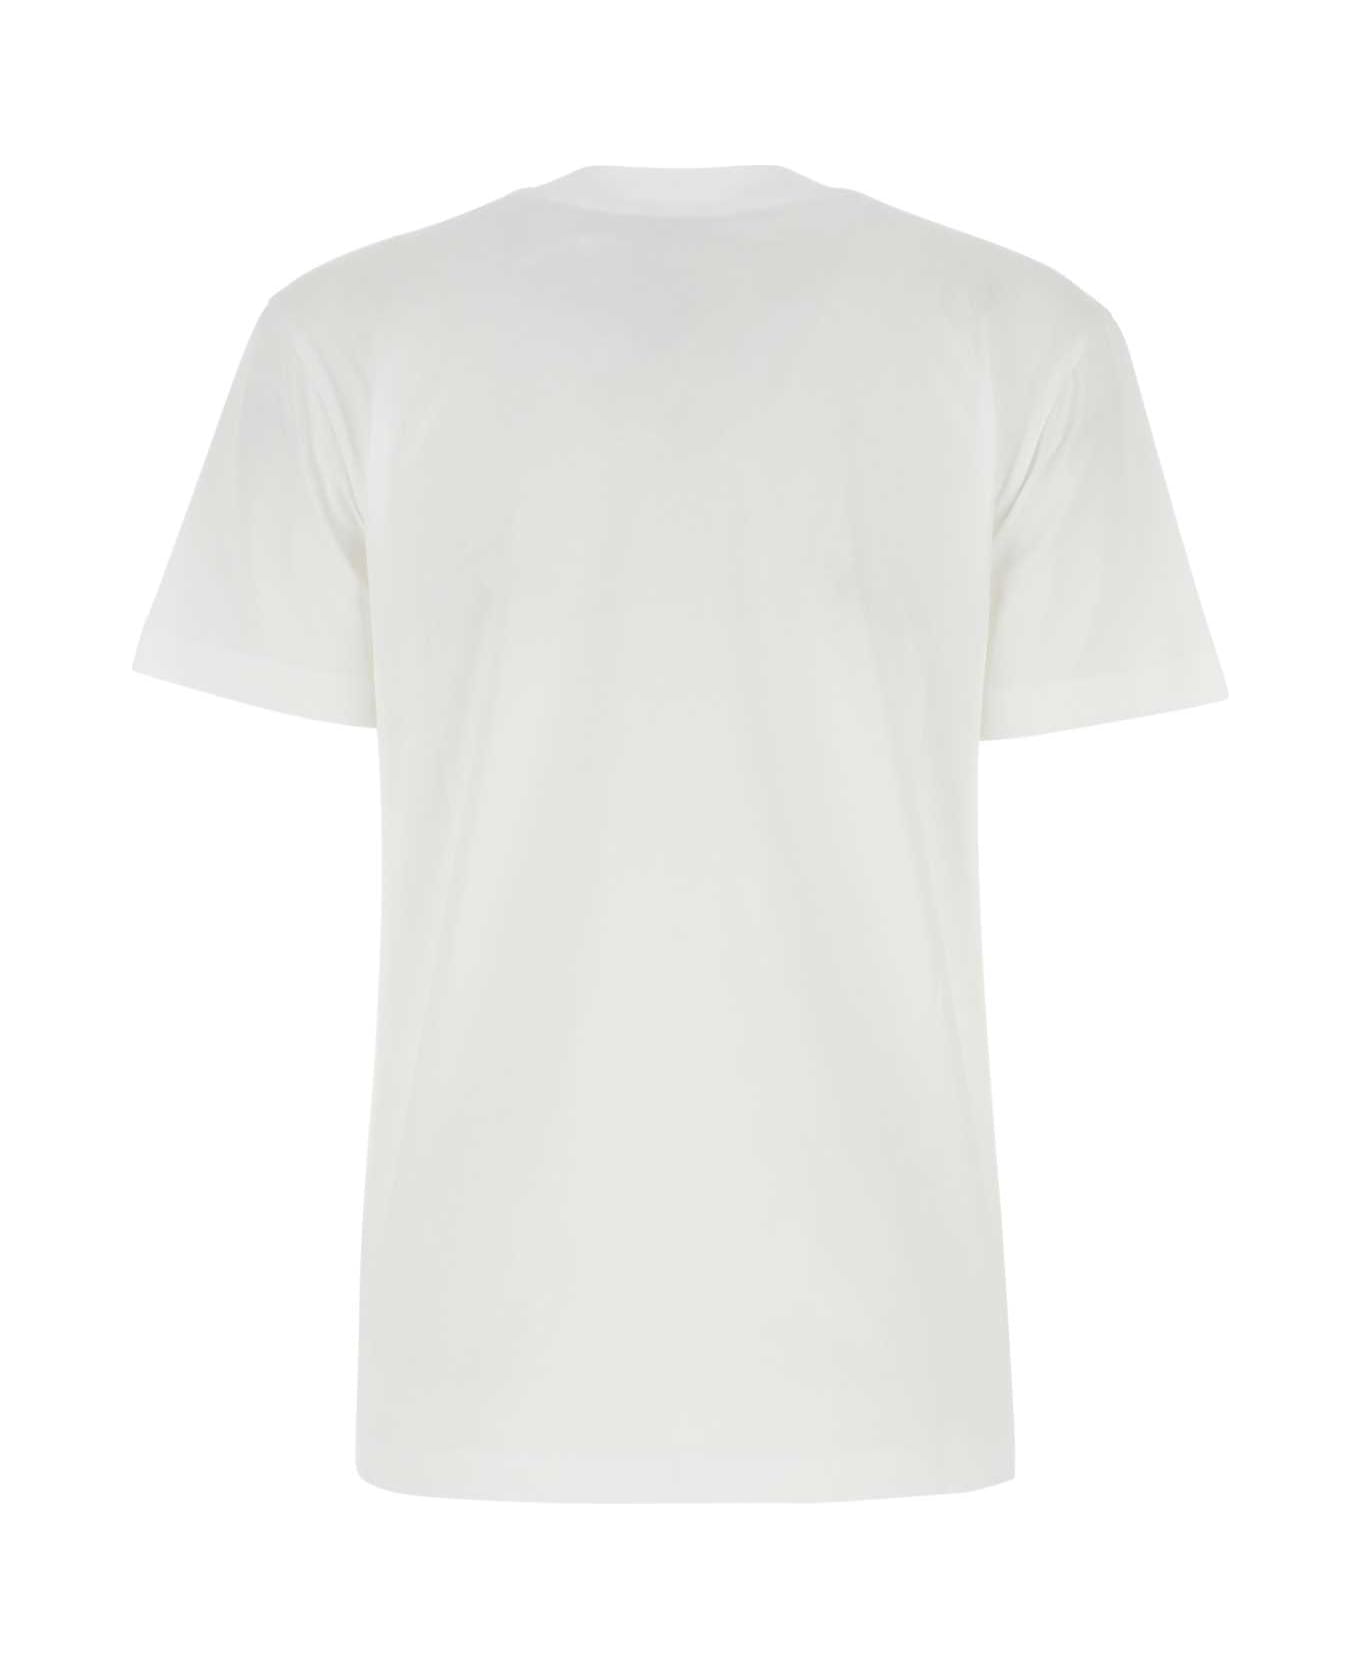 Patou White Cotton T-shirt - 001W